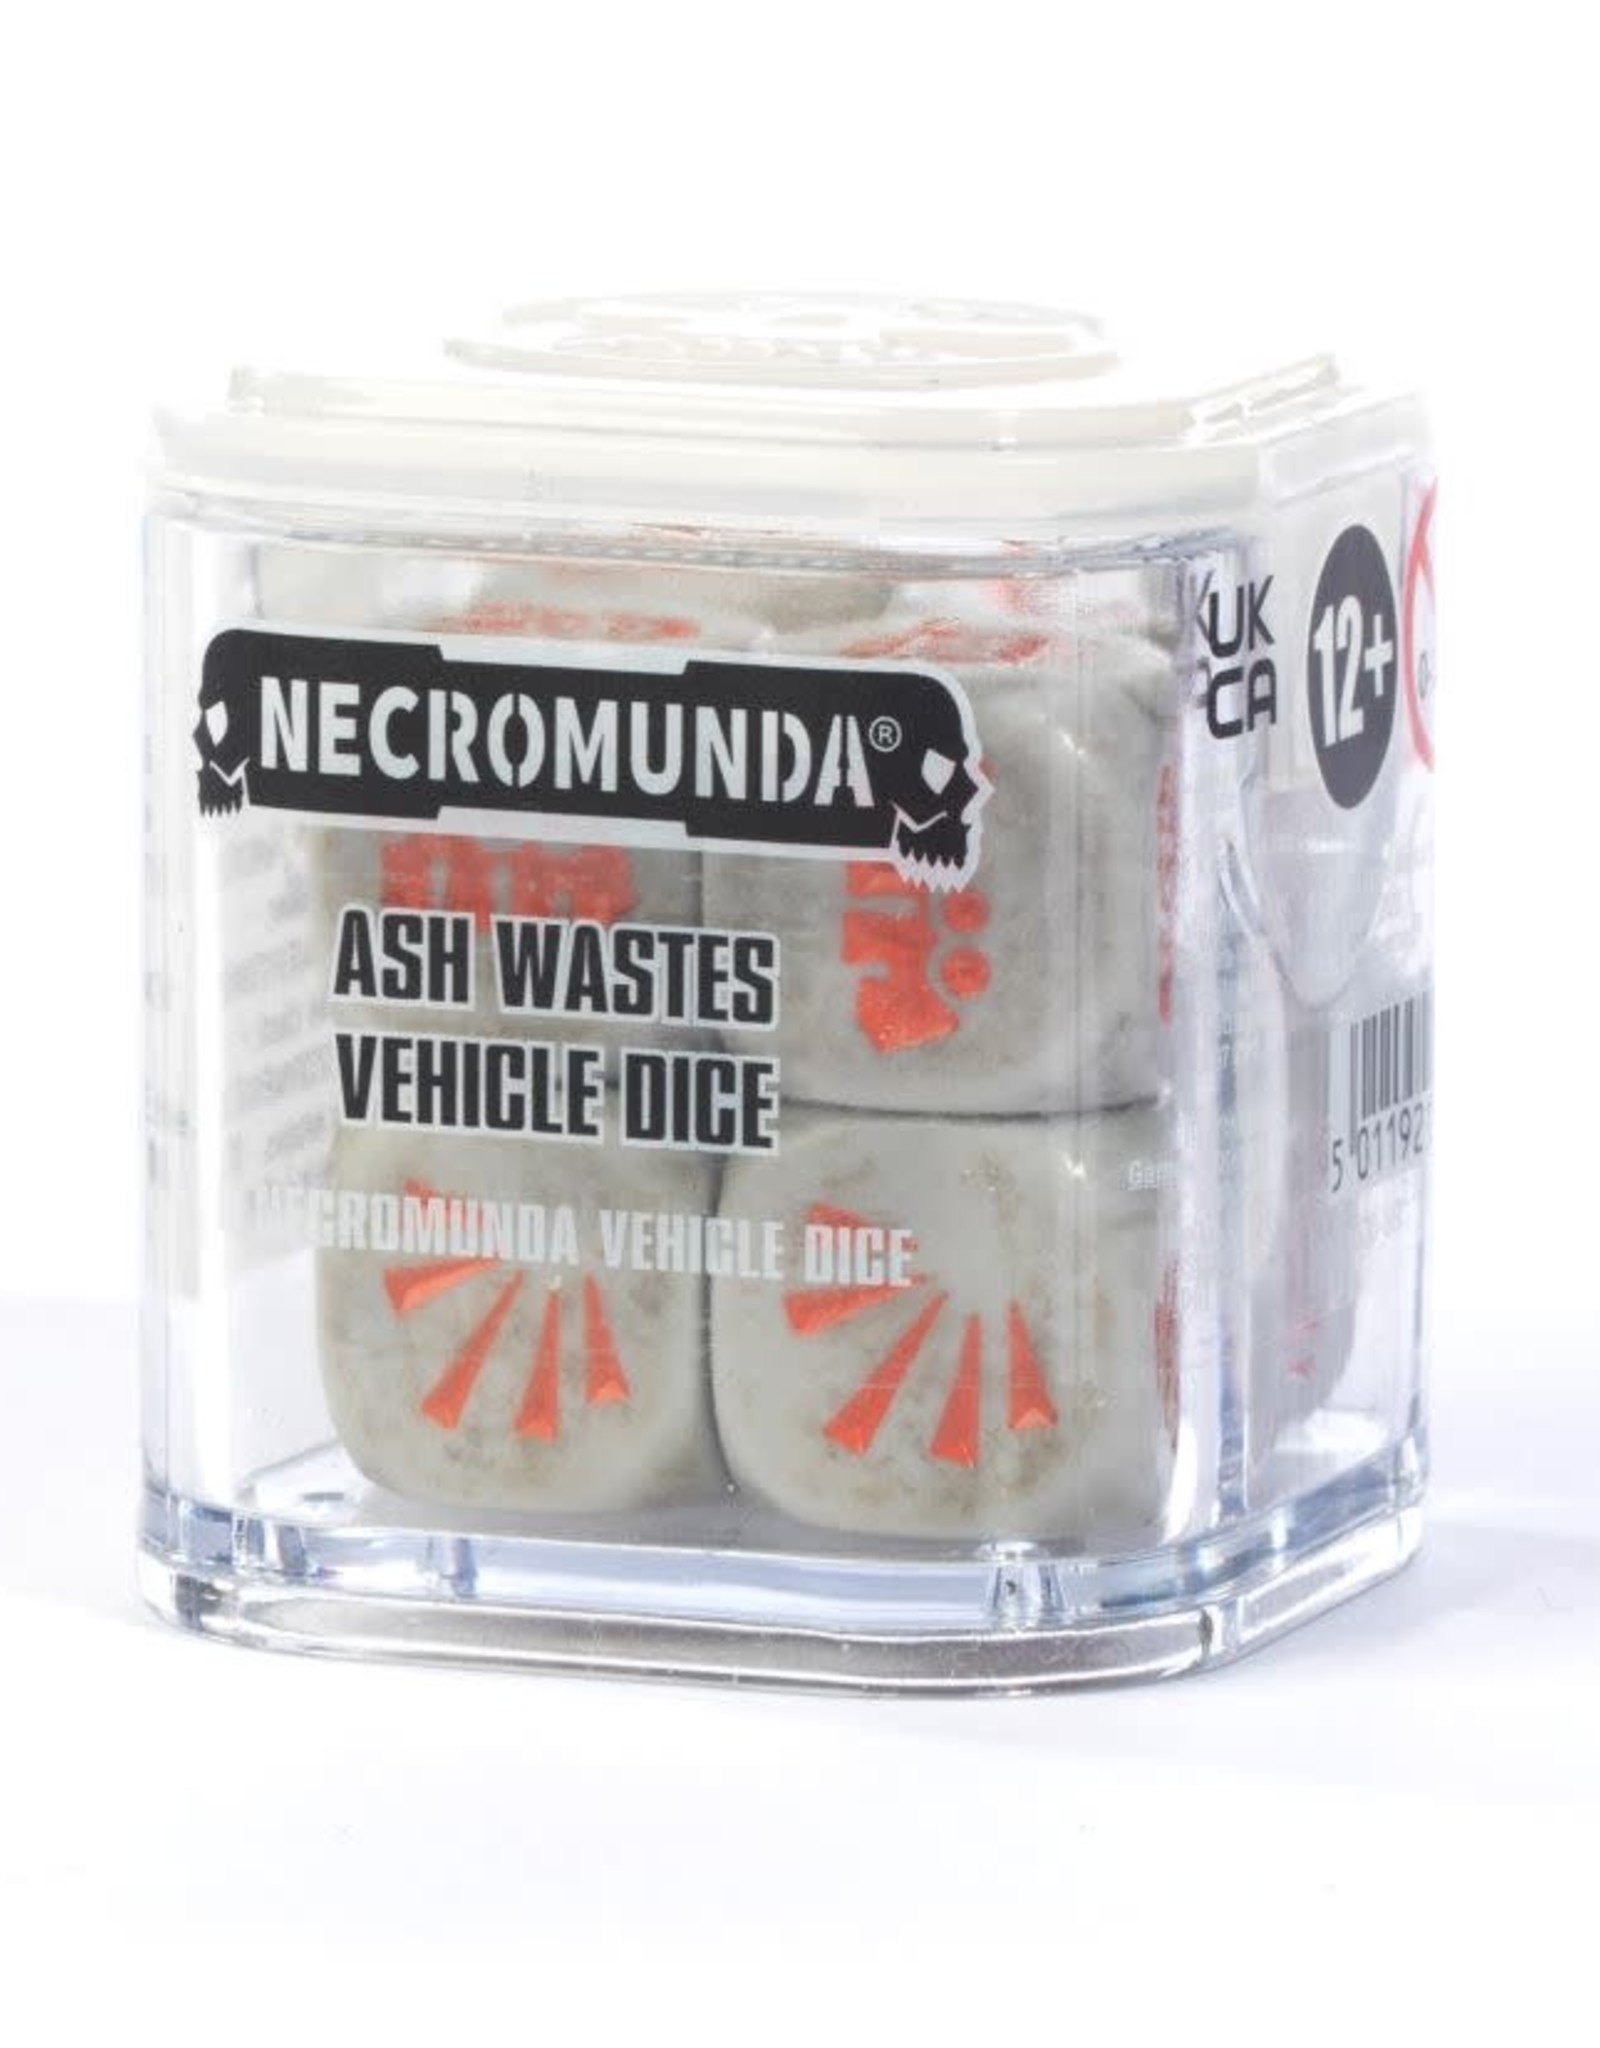 Necromunda Ash Wastes Vehicle Dice